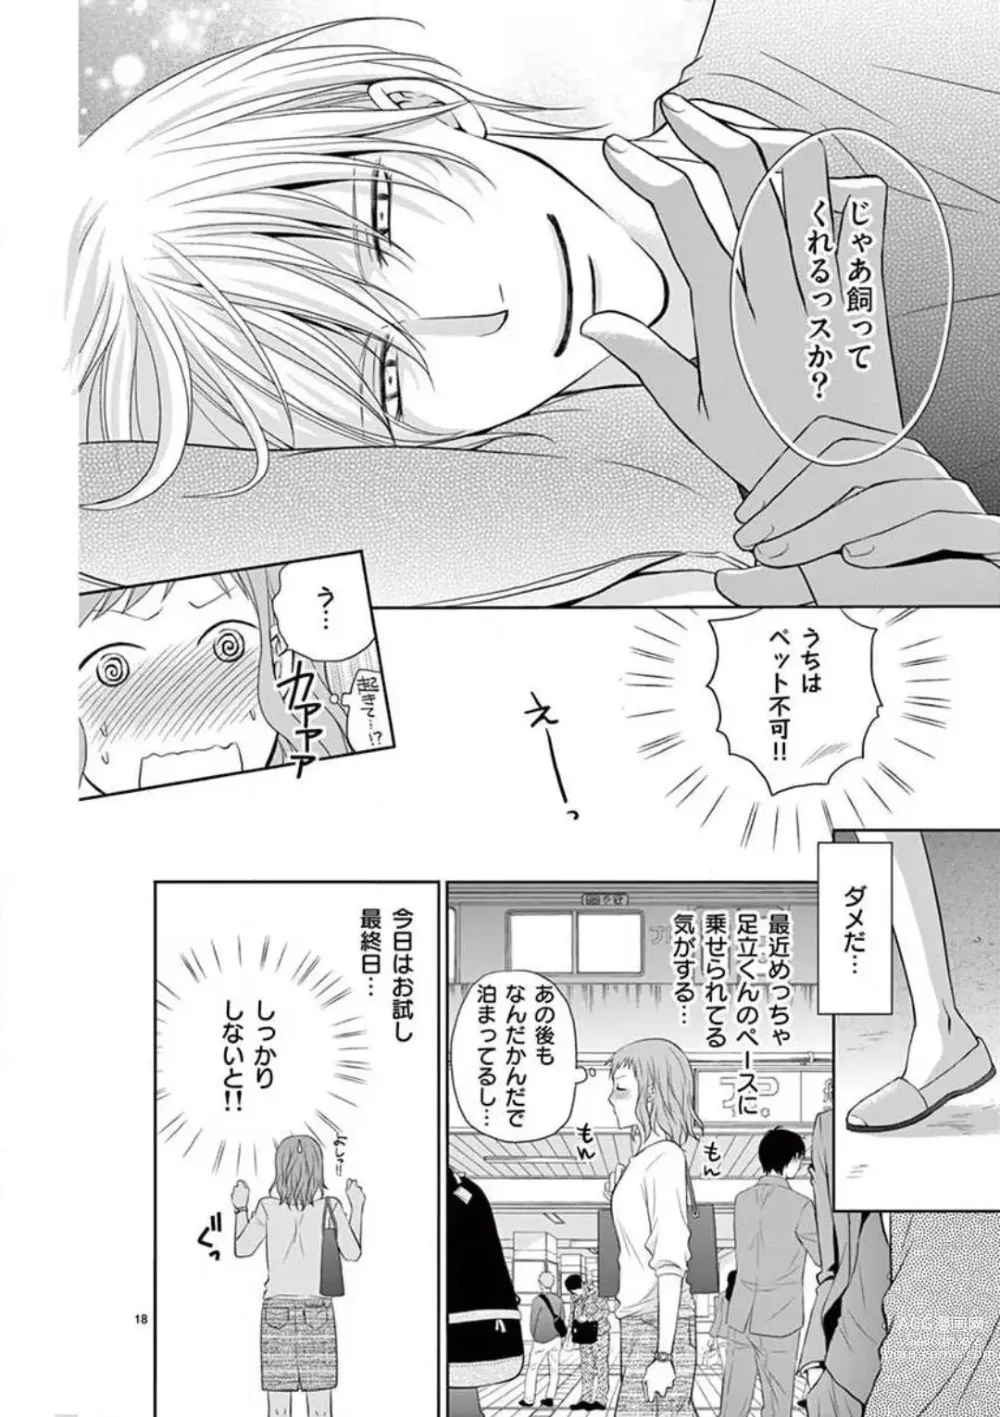 Page 18 of manga Senpai Gentei no Kedamonodesukara 〜 Kanshō-yō Ikemen no Hotobashiru Aijō〜 1-4